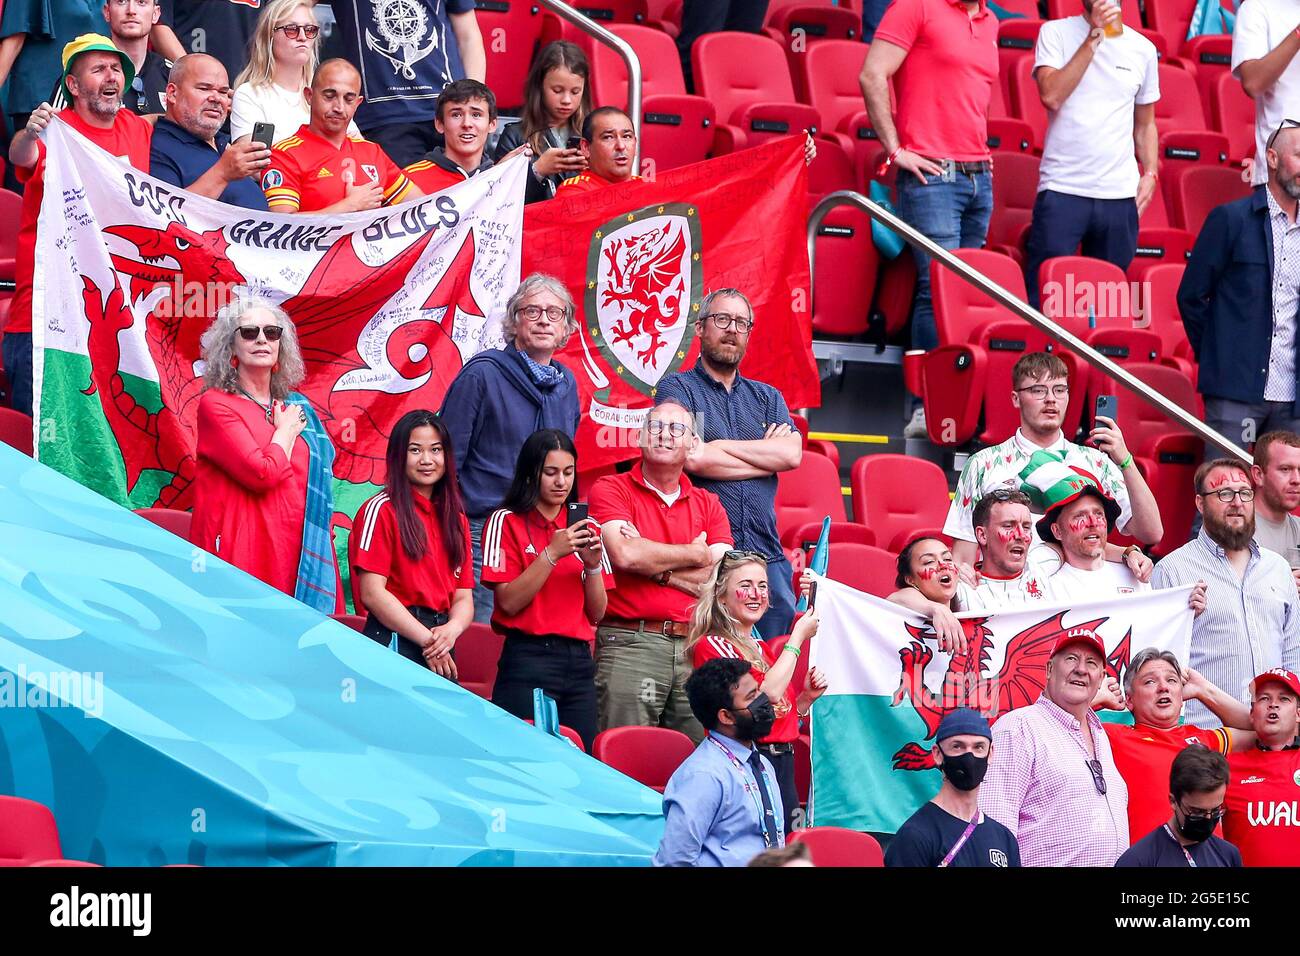 Wales-Fans vor dem Auftakt während der UEFA Euro 2020-Runde des Spiels 16 in der Johan Cruijff Arena in Amsterdam, Niederlande. Bilddatum: Samstag, 26. Juni 2021. Stockfoto